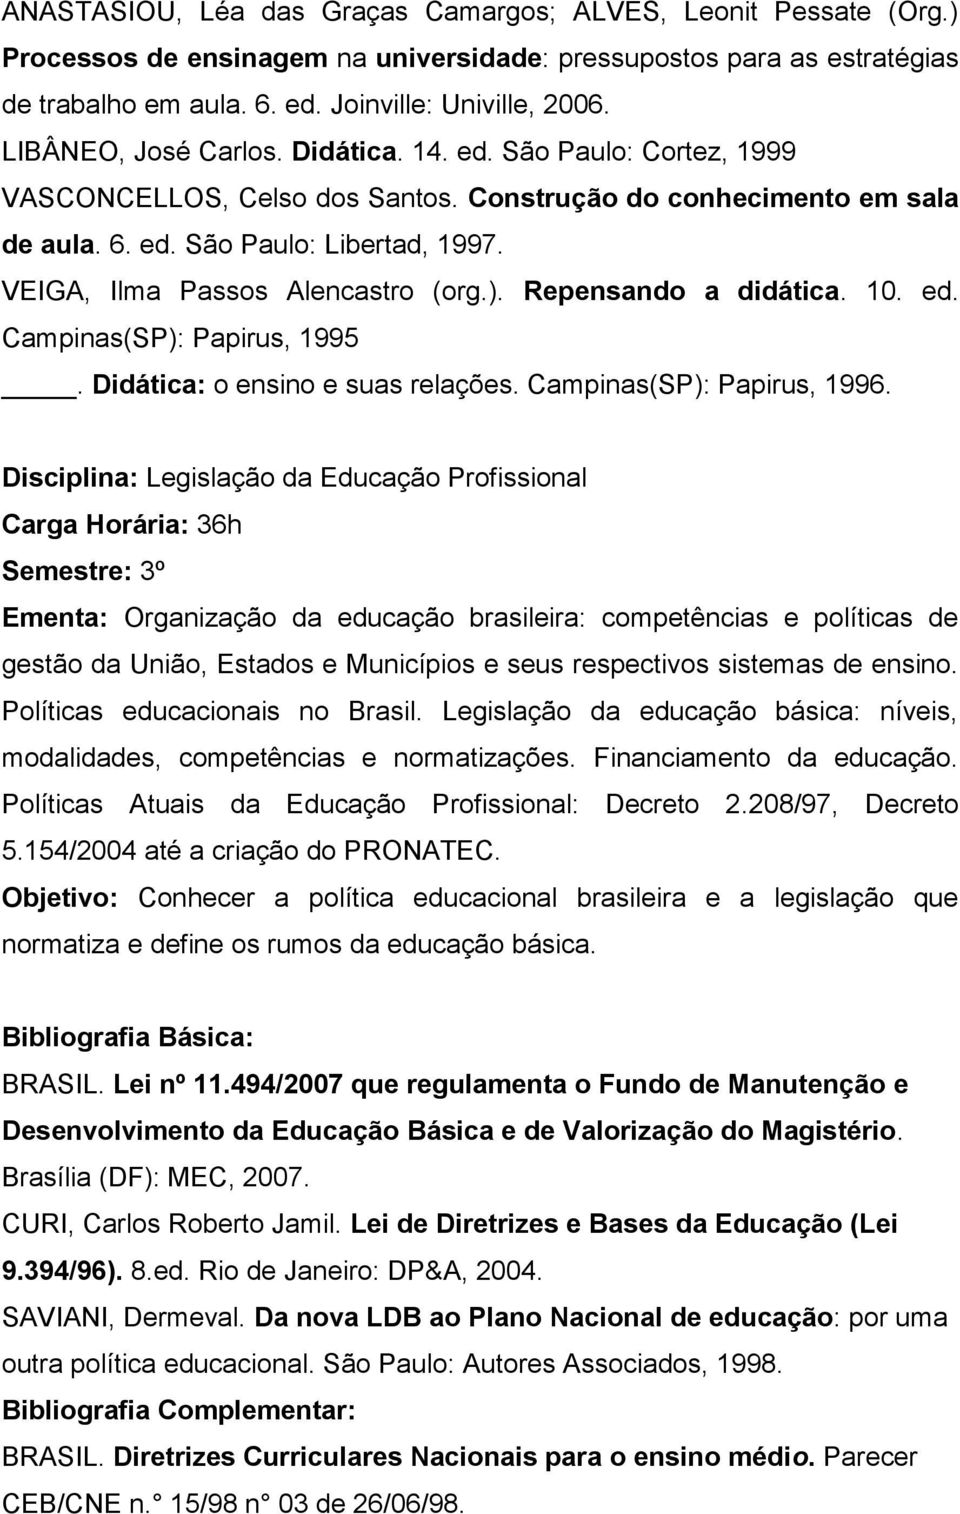 VEIGA, Ilma Passos Alencastro (org.). Repensando a didática. 10. ed. Campinas(SP): Papirus, 1995. Didática: o ensino e suas relações. Campinas(SP): Papirus, 1996.